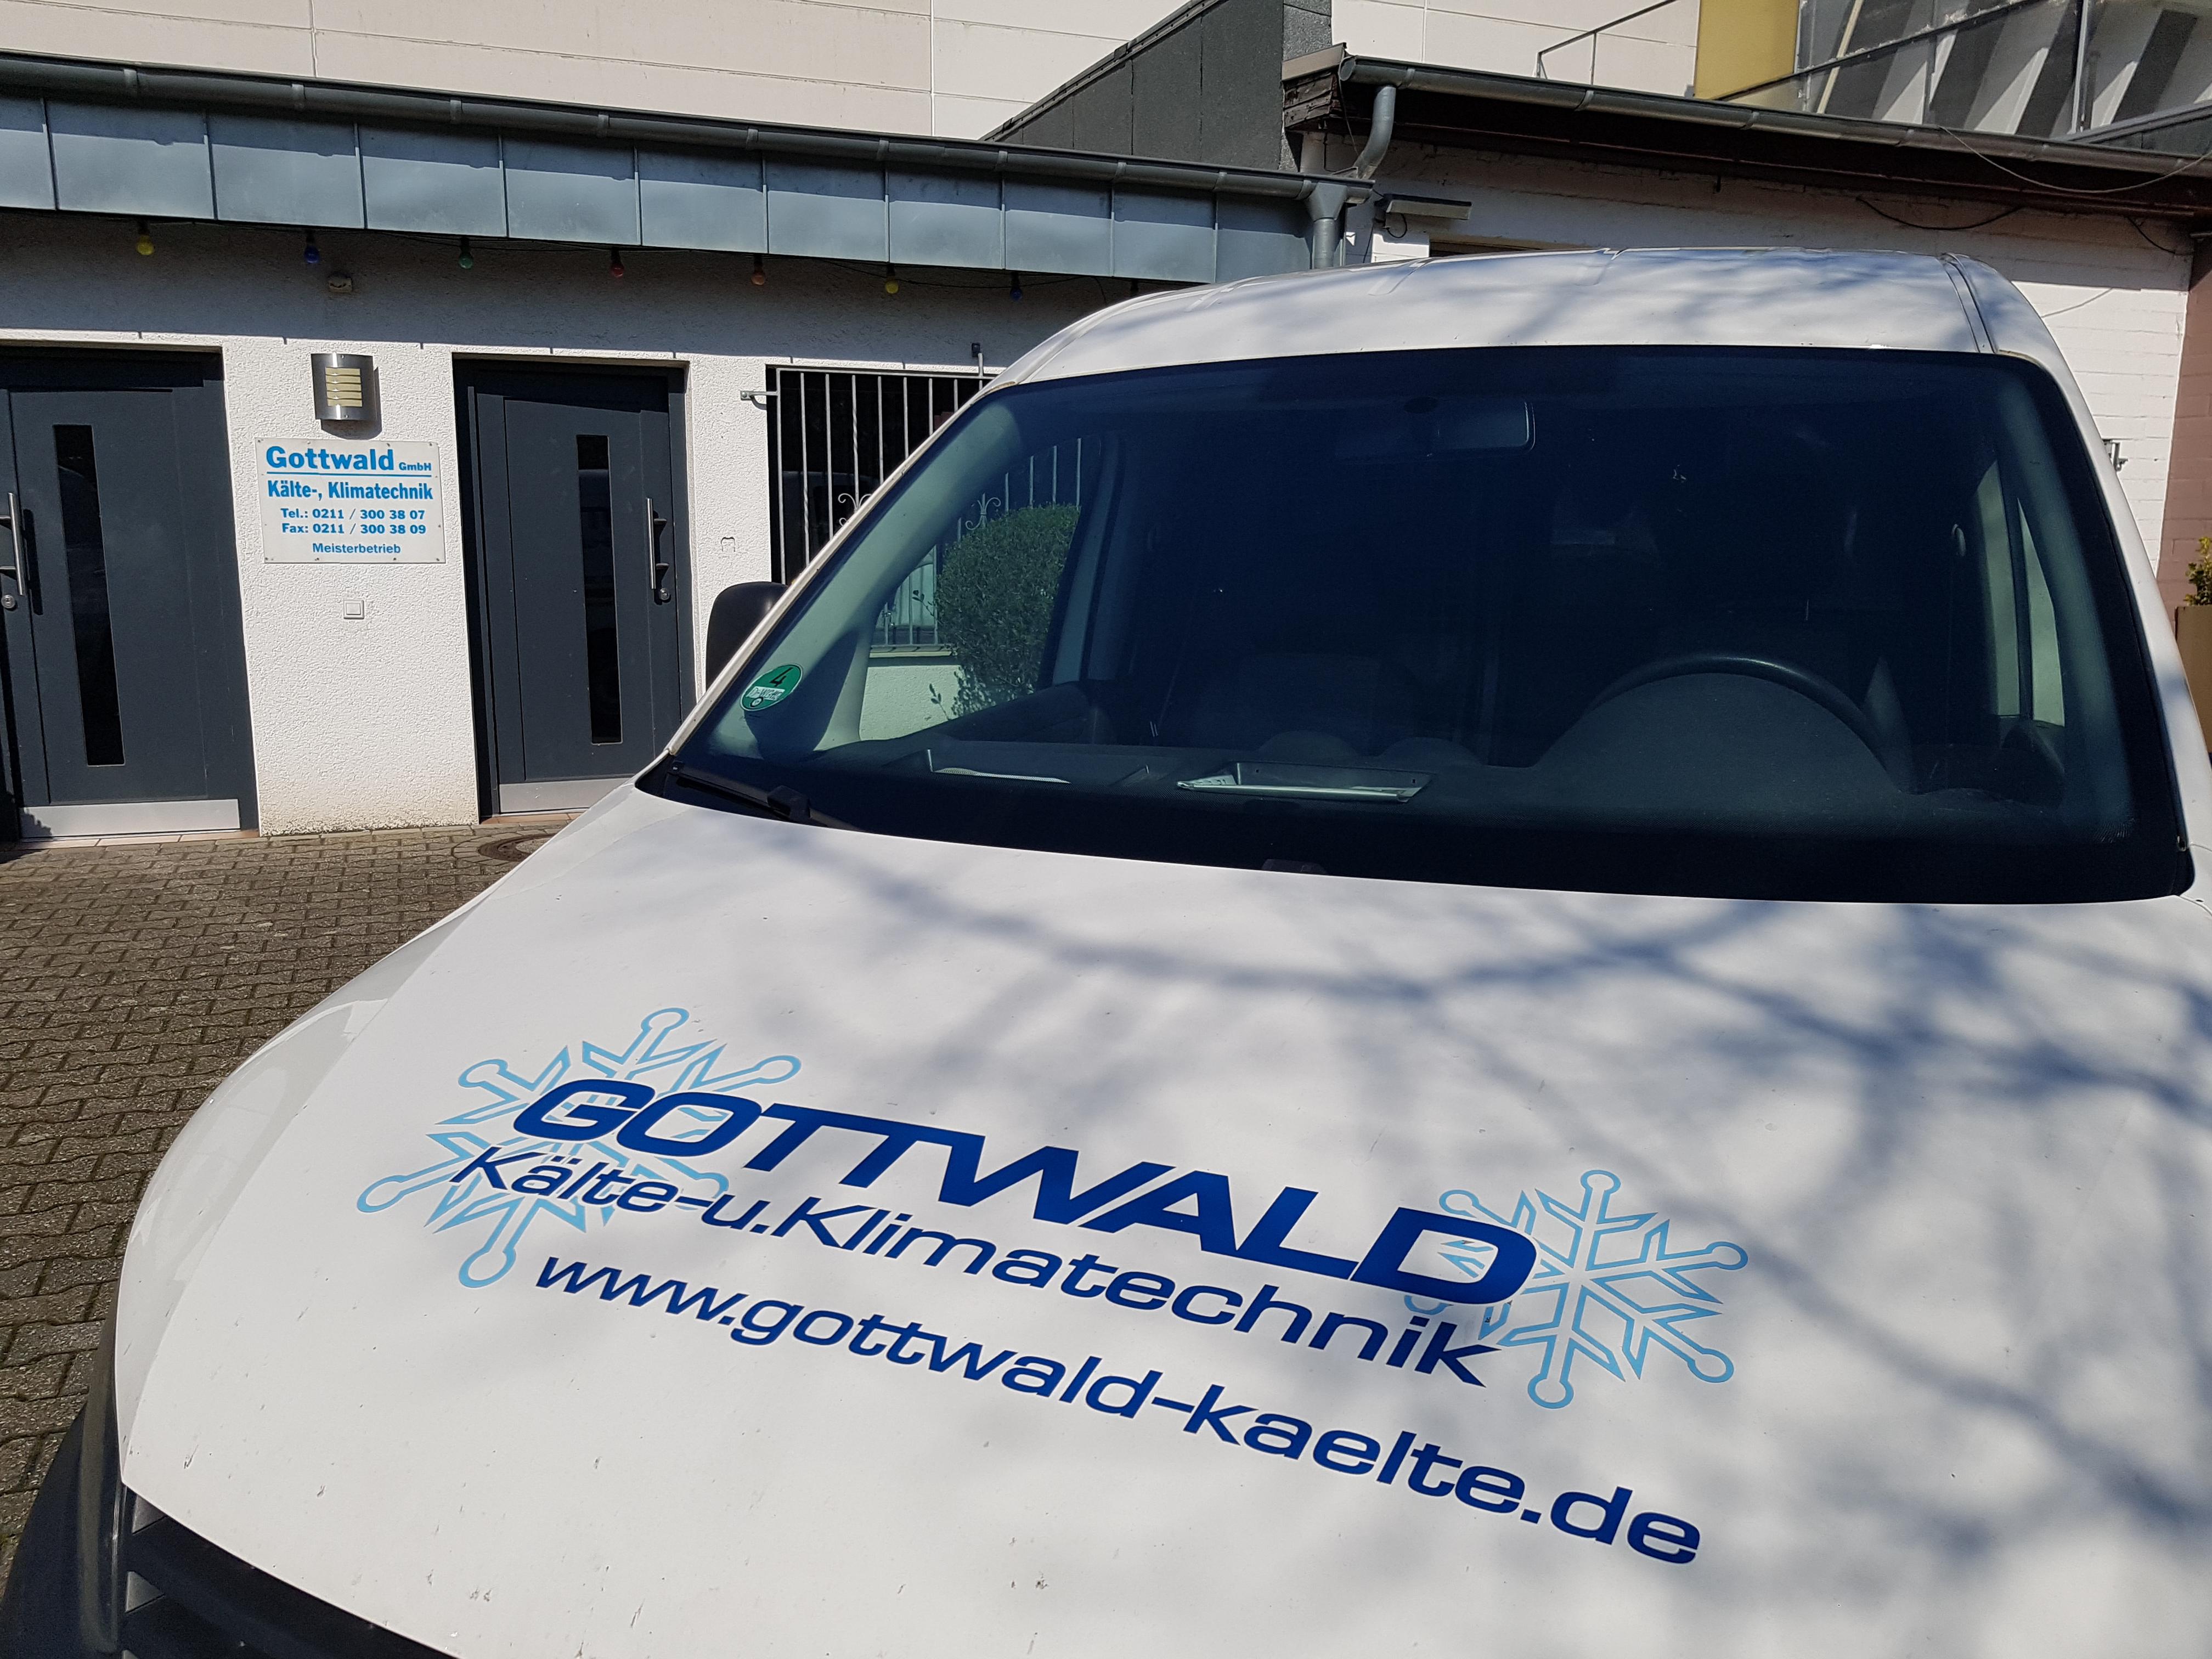 Gottwald Kälte- und Klimatechnik GmbH Düsseldorf, Ubierstraße 14 in Düsseldorf